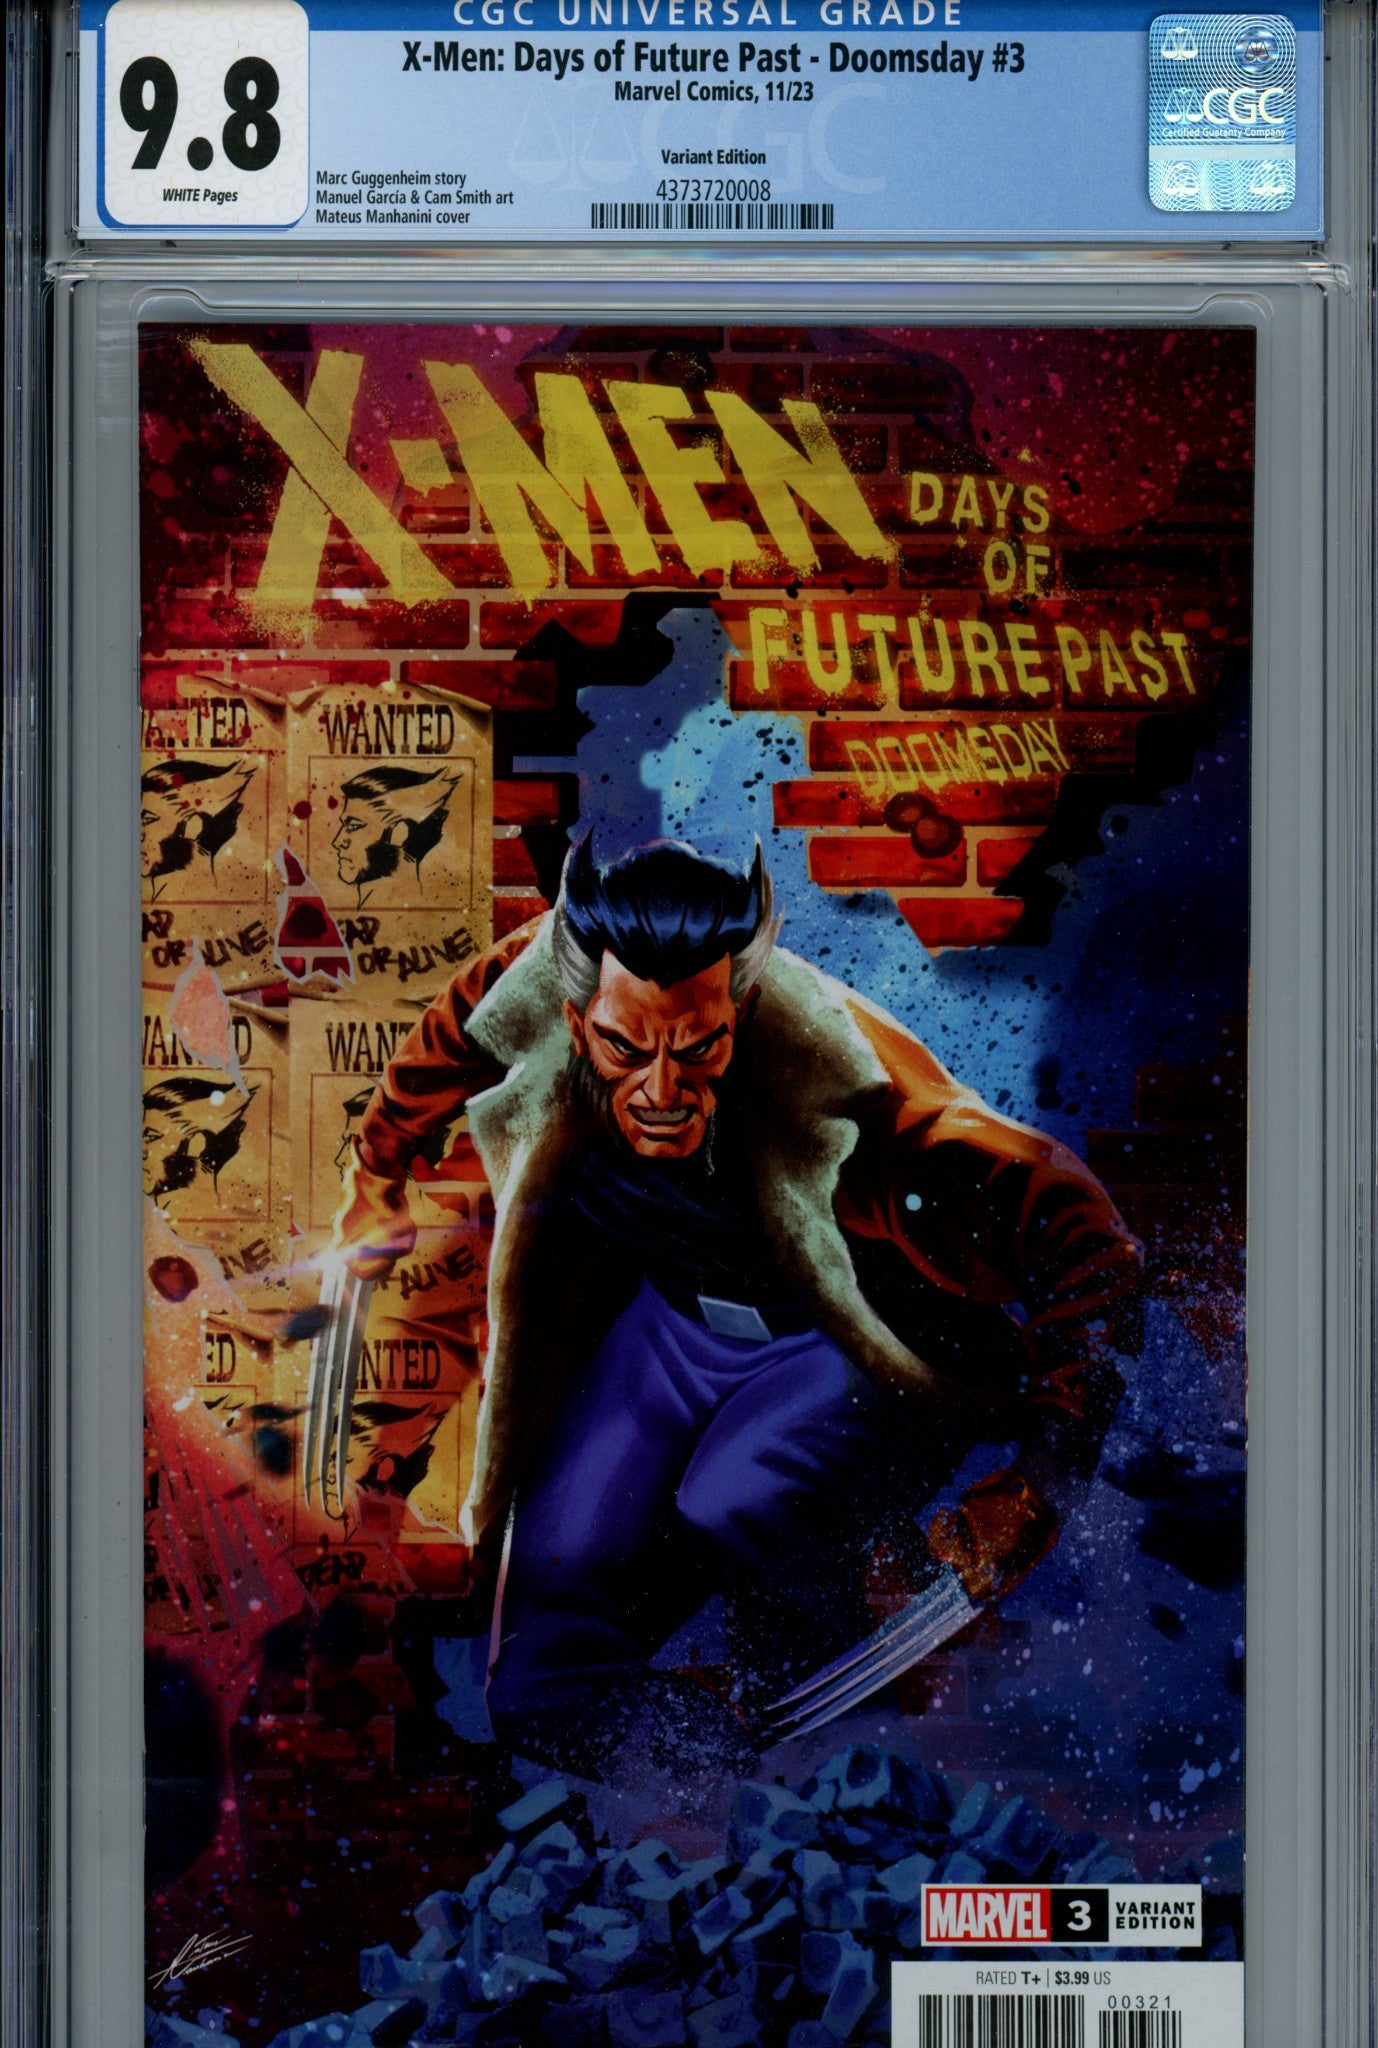 X-Men: Days of Future Past - Doomsday 3 CGC 9.8 (NM/M) (2023) Manhanini Homage Variant 